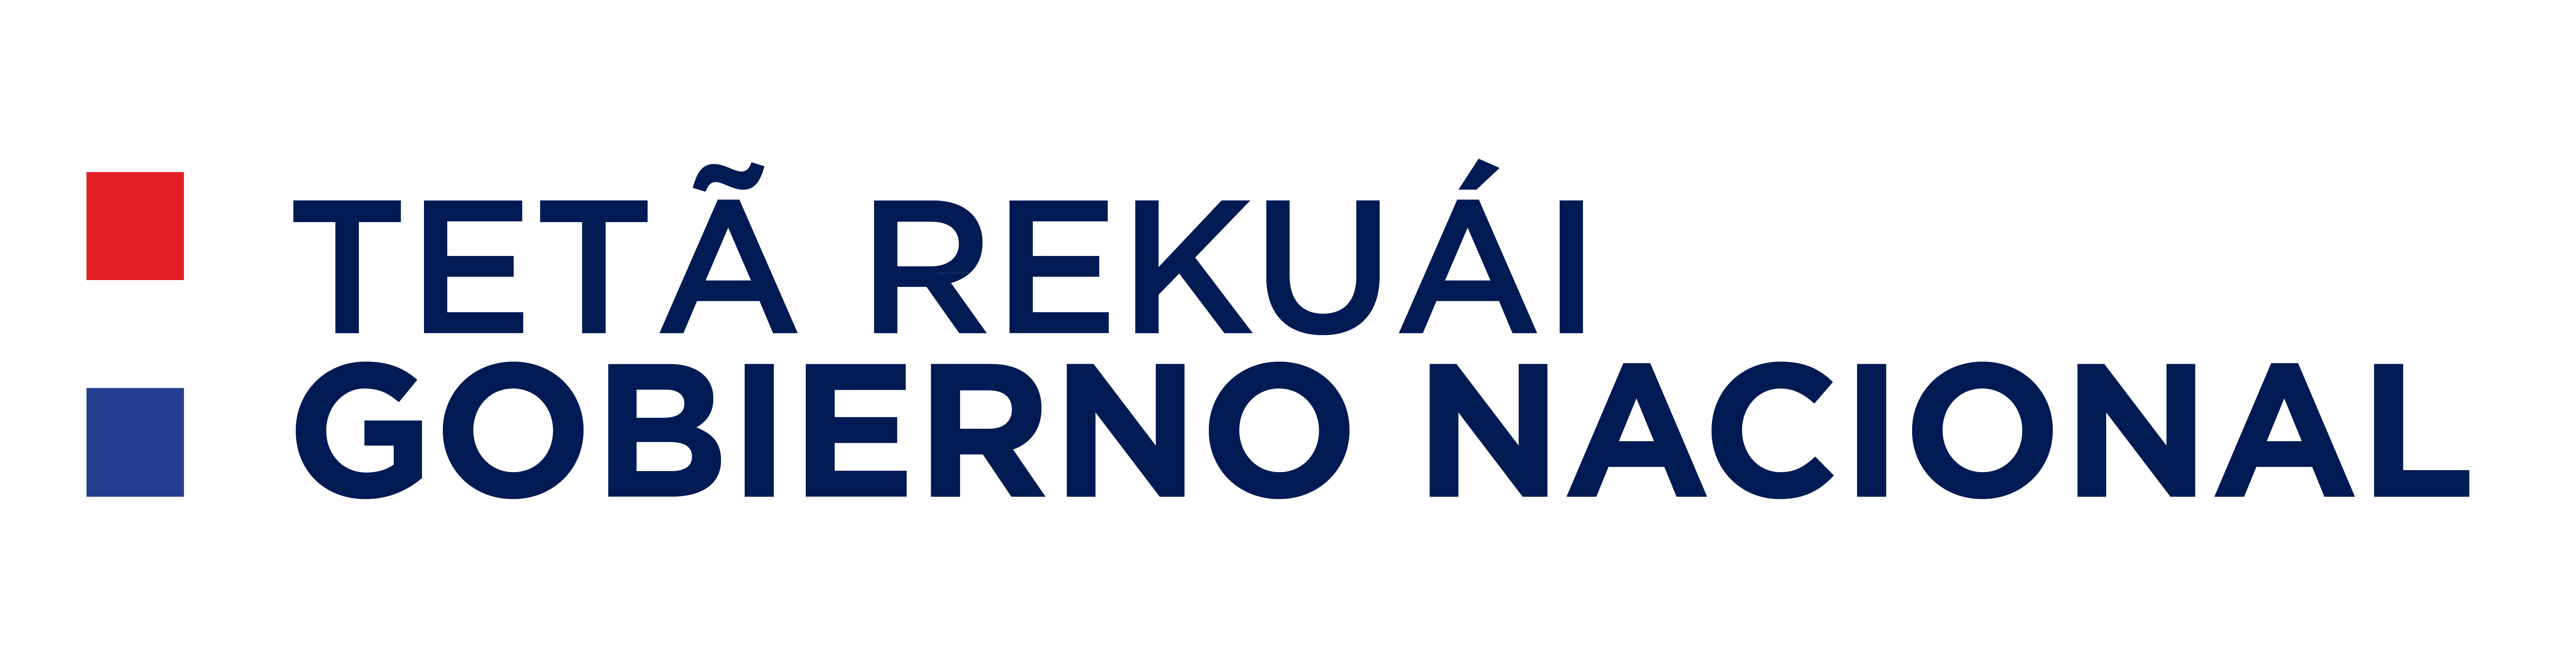 Logo Gobierno Nacional Paraguay